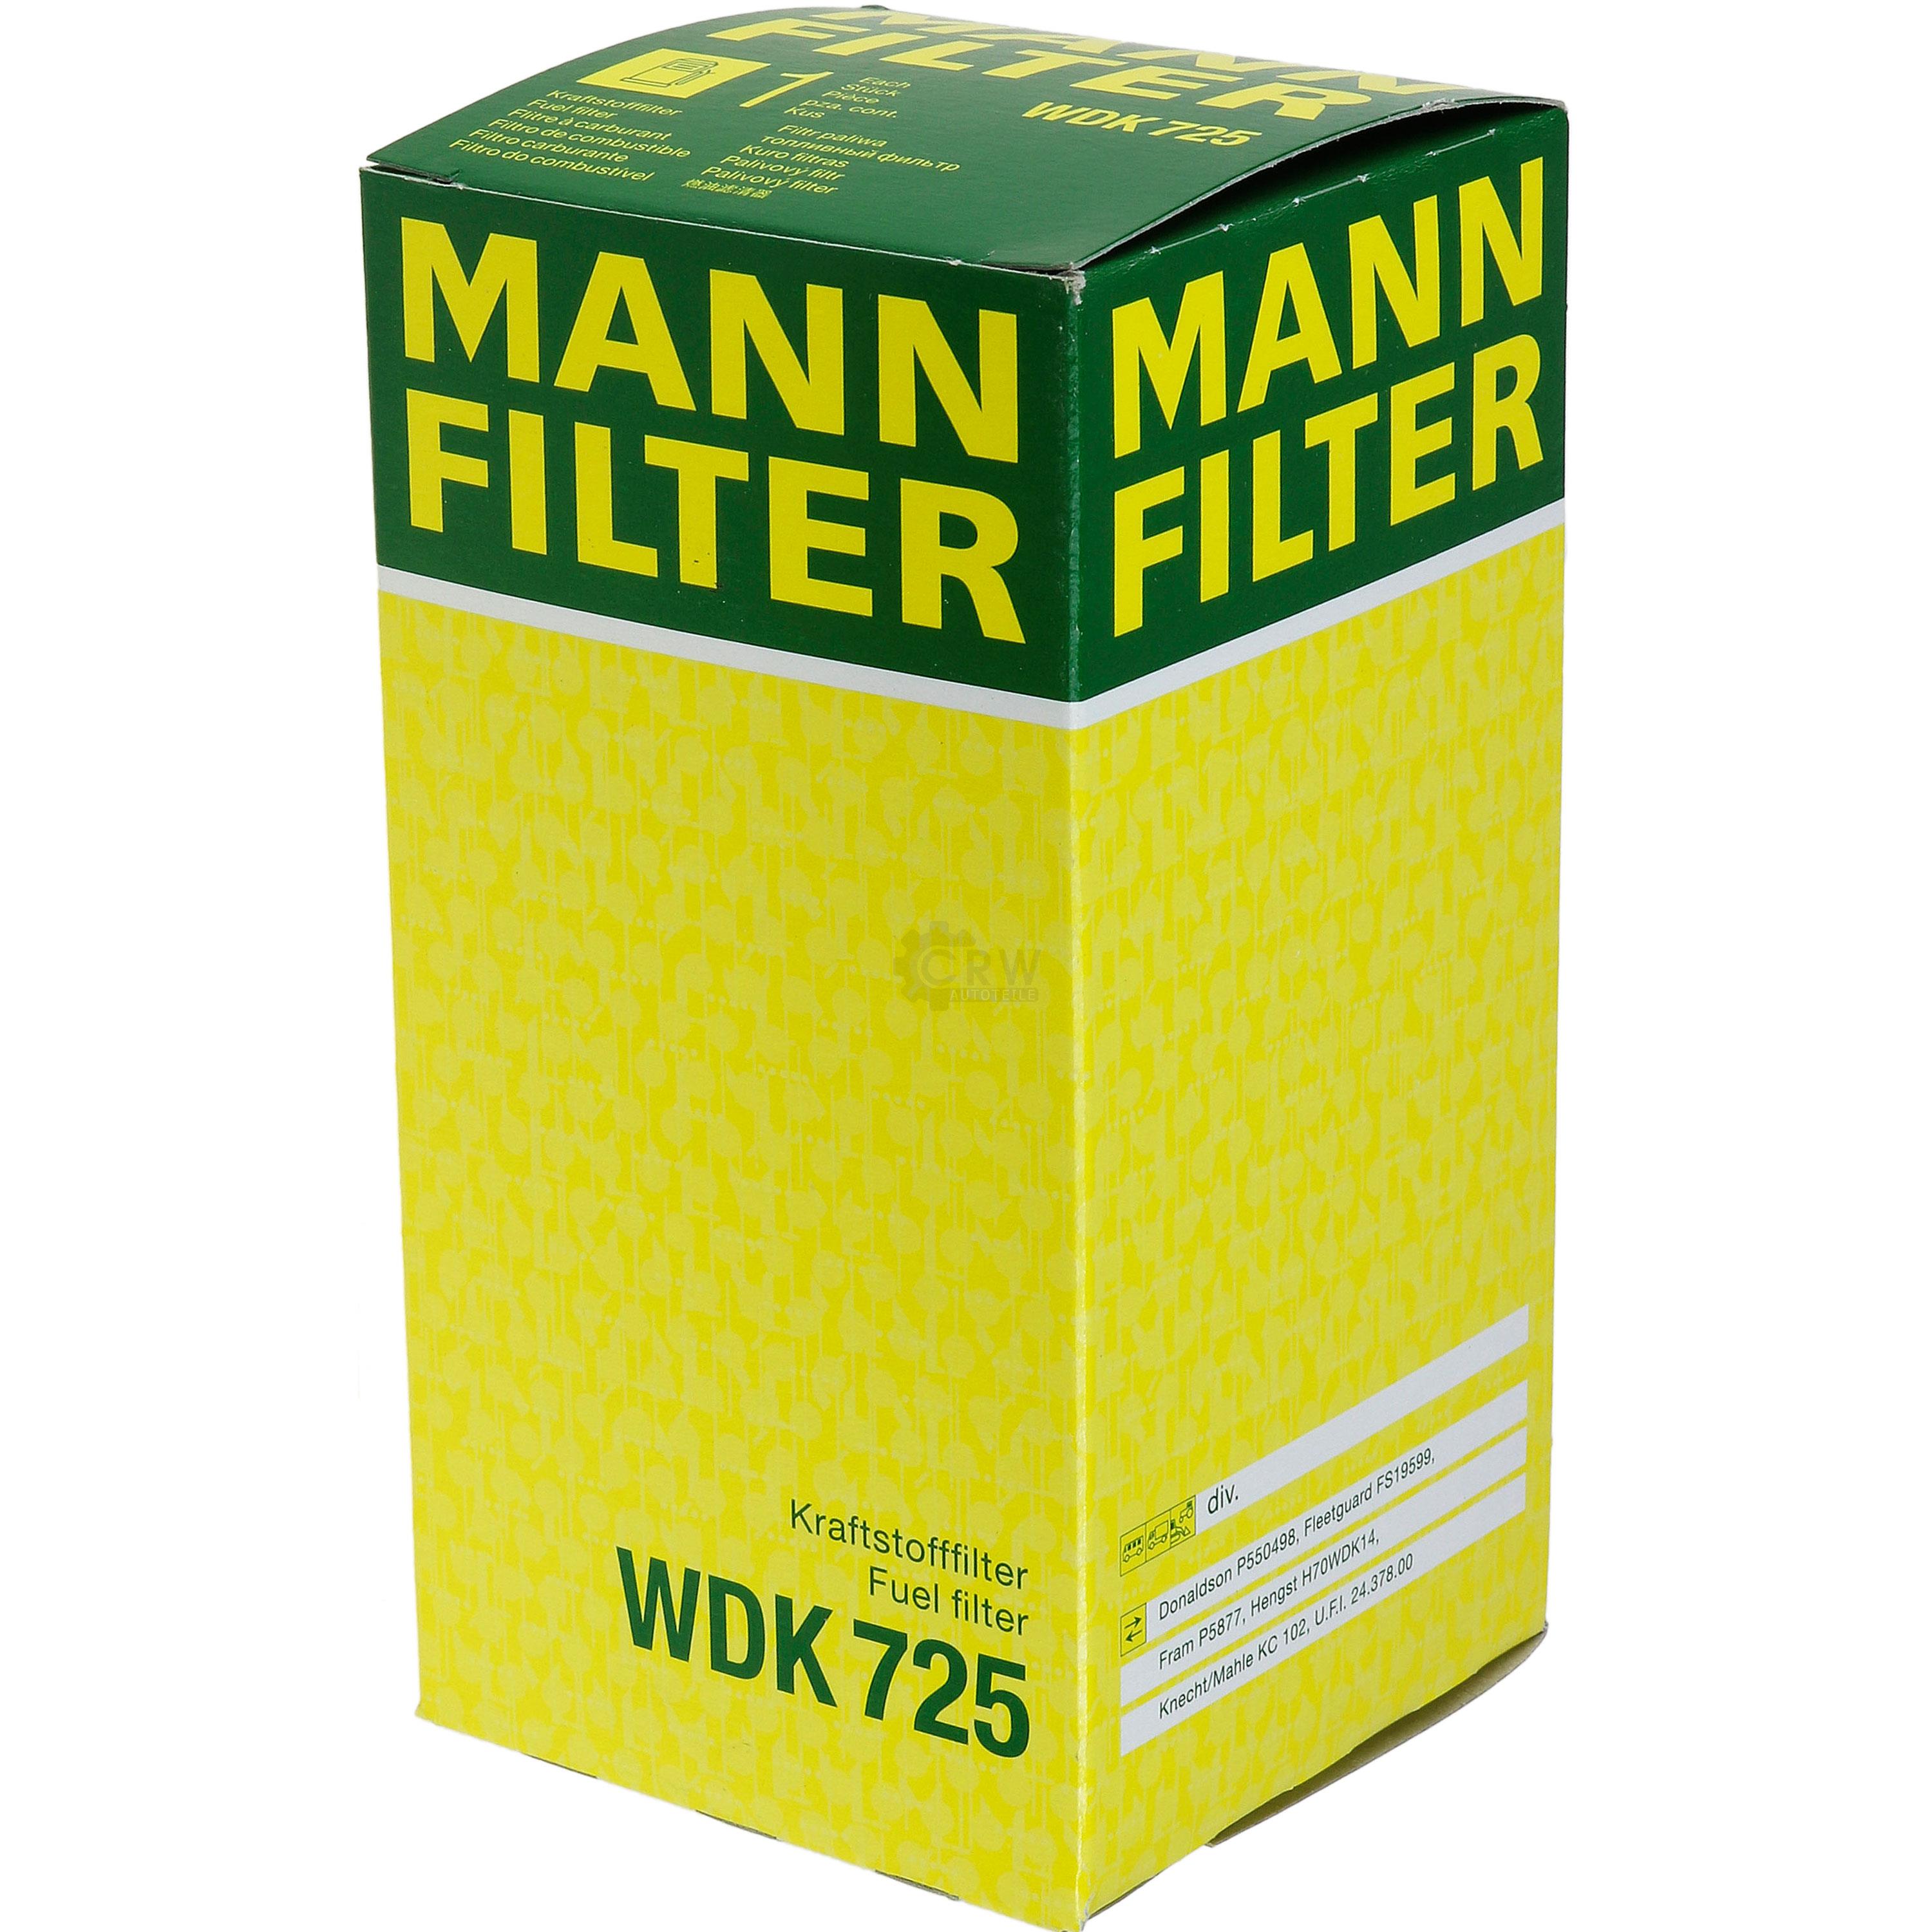 MANN-FILTER Kraftstofffilter WDK 725 Fuel Filter